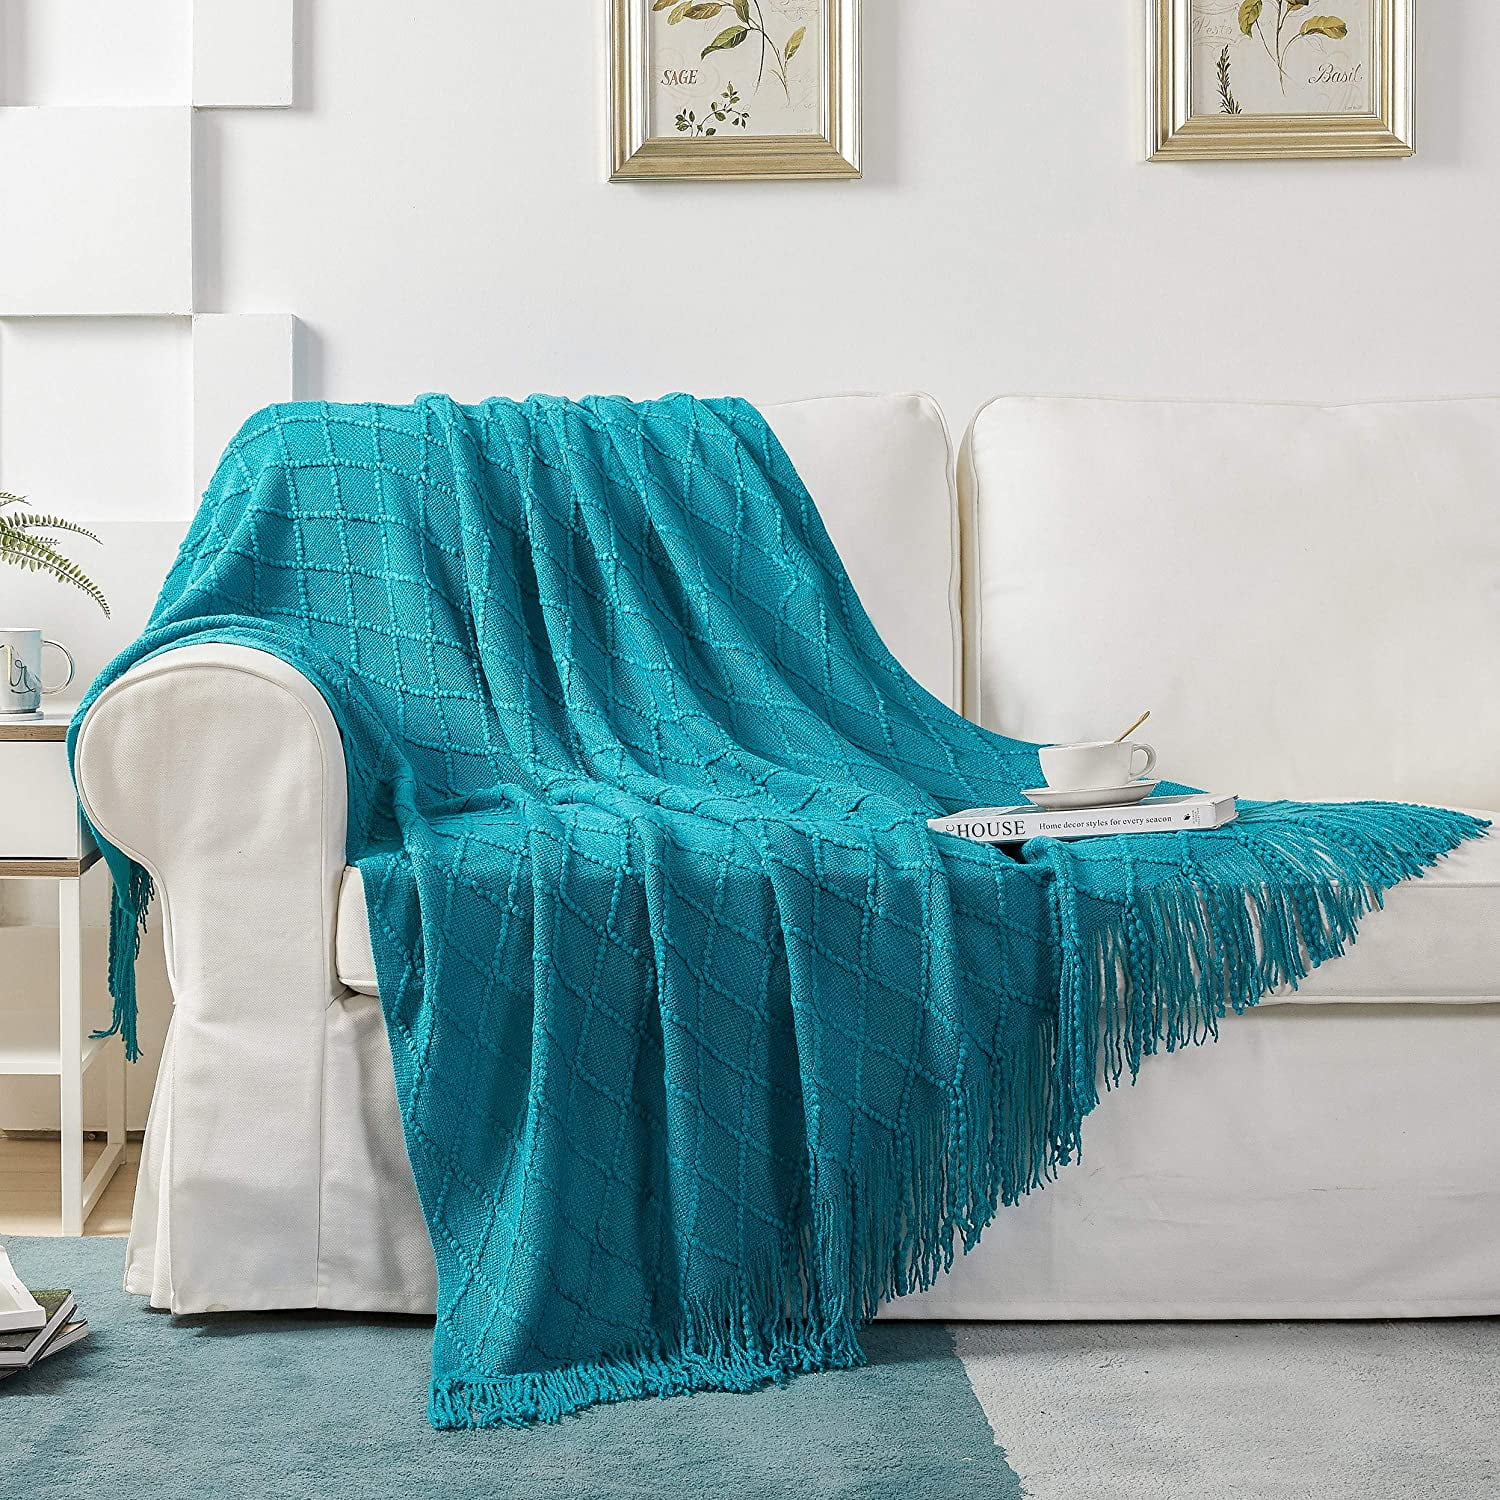 Arran Throw Blankets Luxury Wool Feel Super Soft Cosy Tassel Fringe Throws 